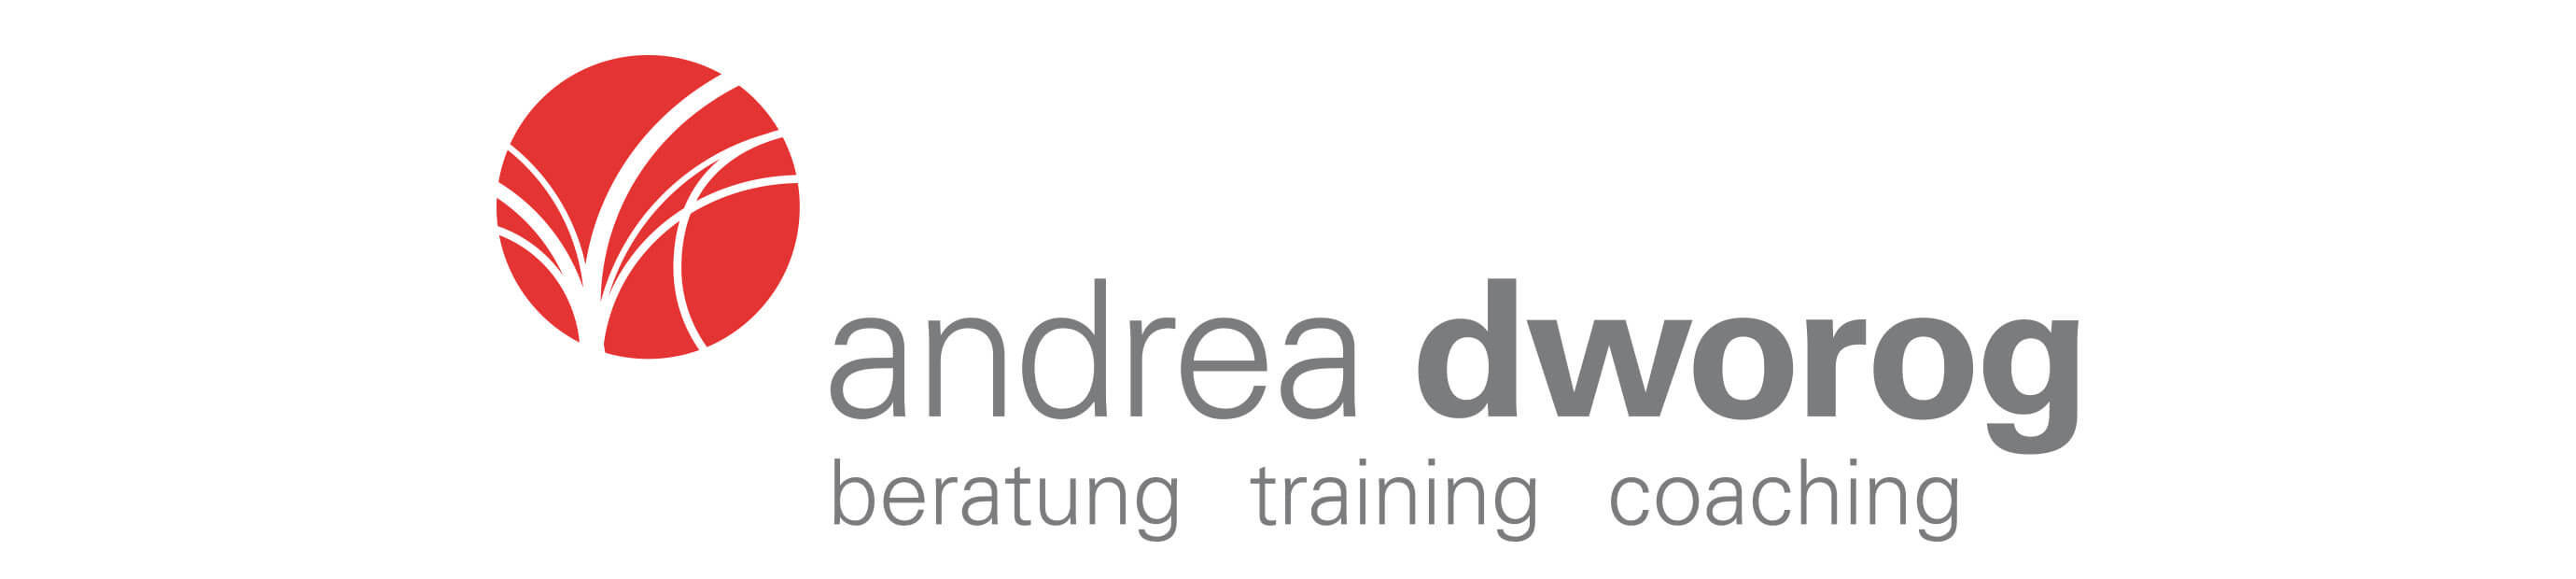 Neues Logo für Andrea Dworog Coaching und Unternehmensberatung